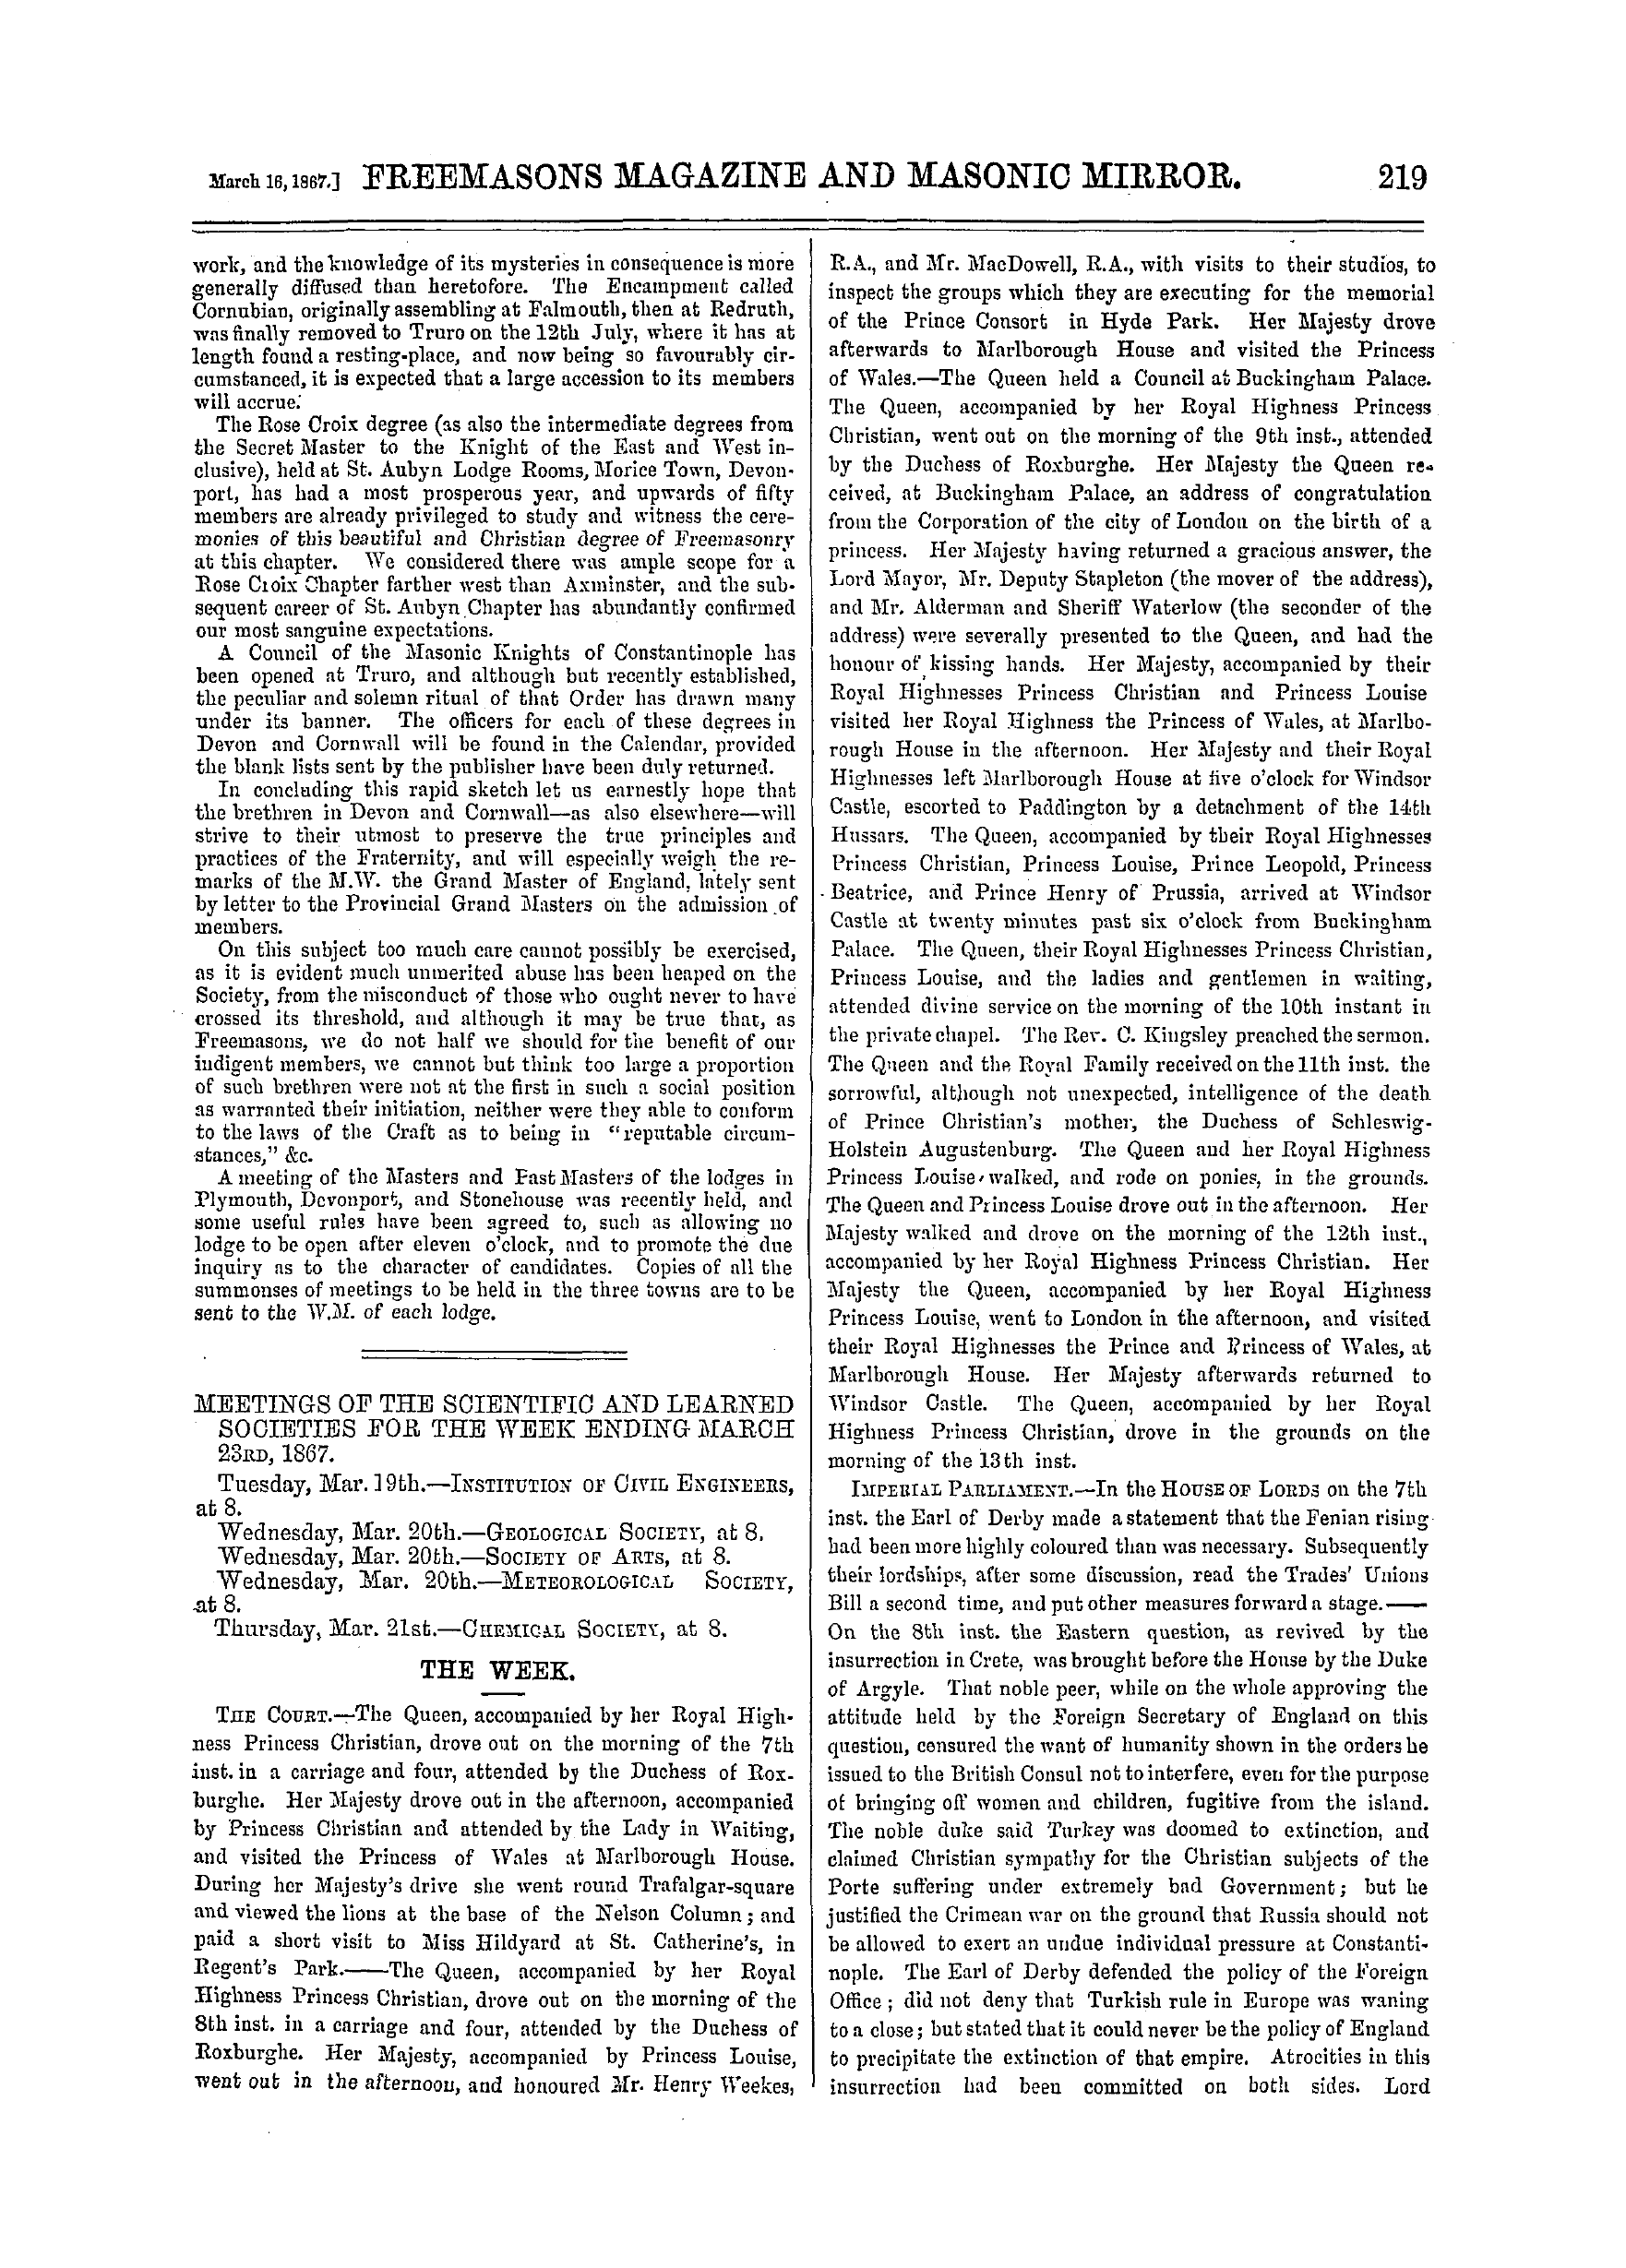 The Freemasons' Monthly Magazine: 1867-03-16: 19